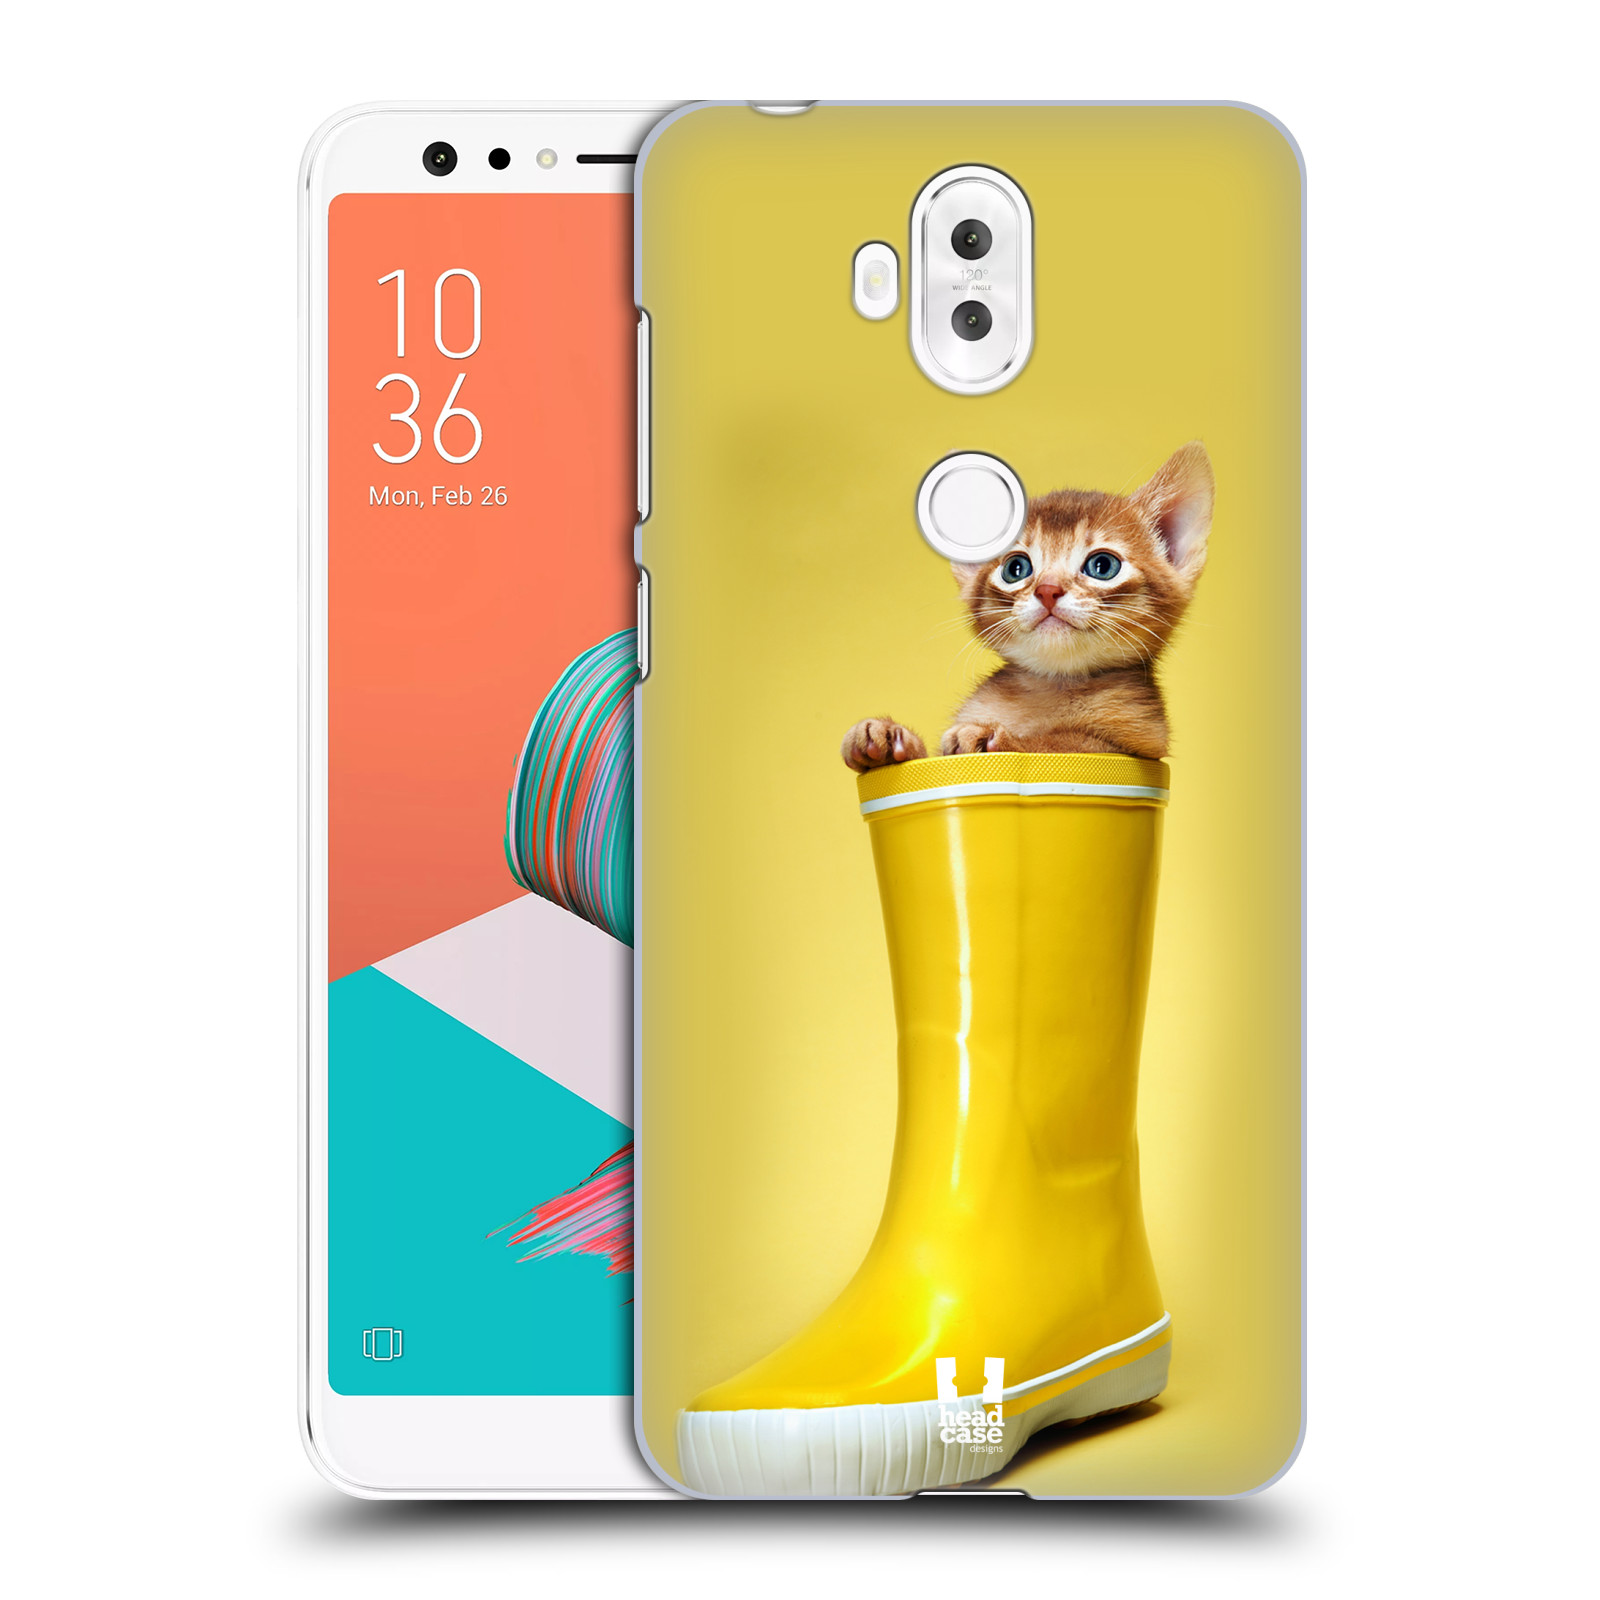 HEAD CASE plastový obal na mobil Asus Zenfone 5 LITE ZC600KL vzor Legrační zvířátka kotě v botě žlutá